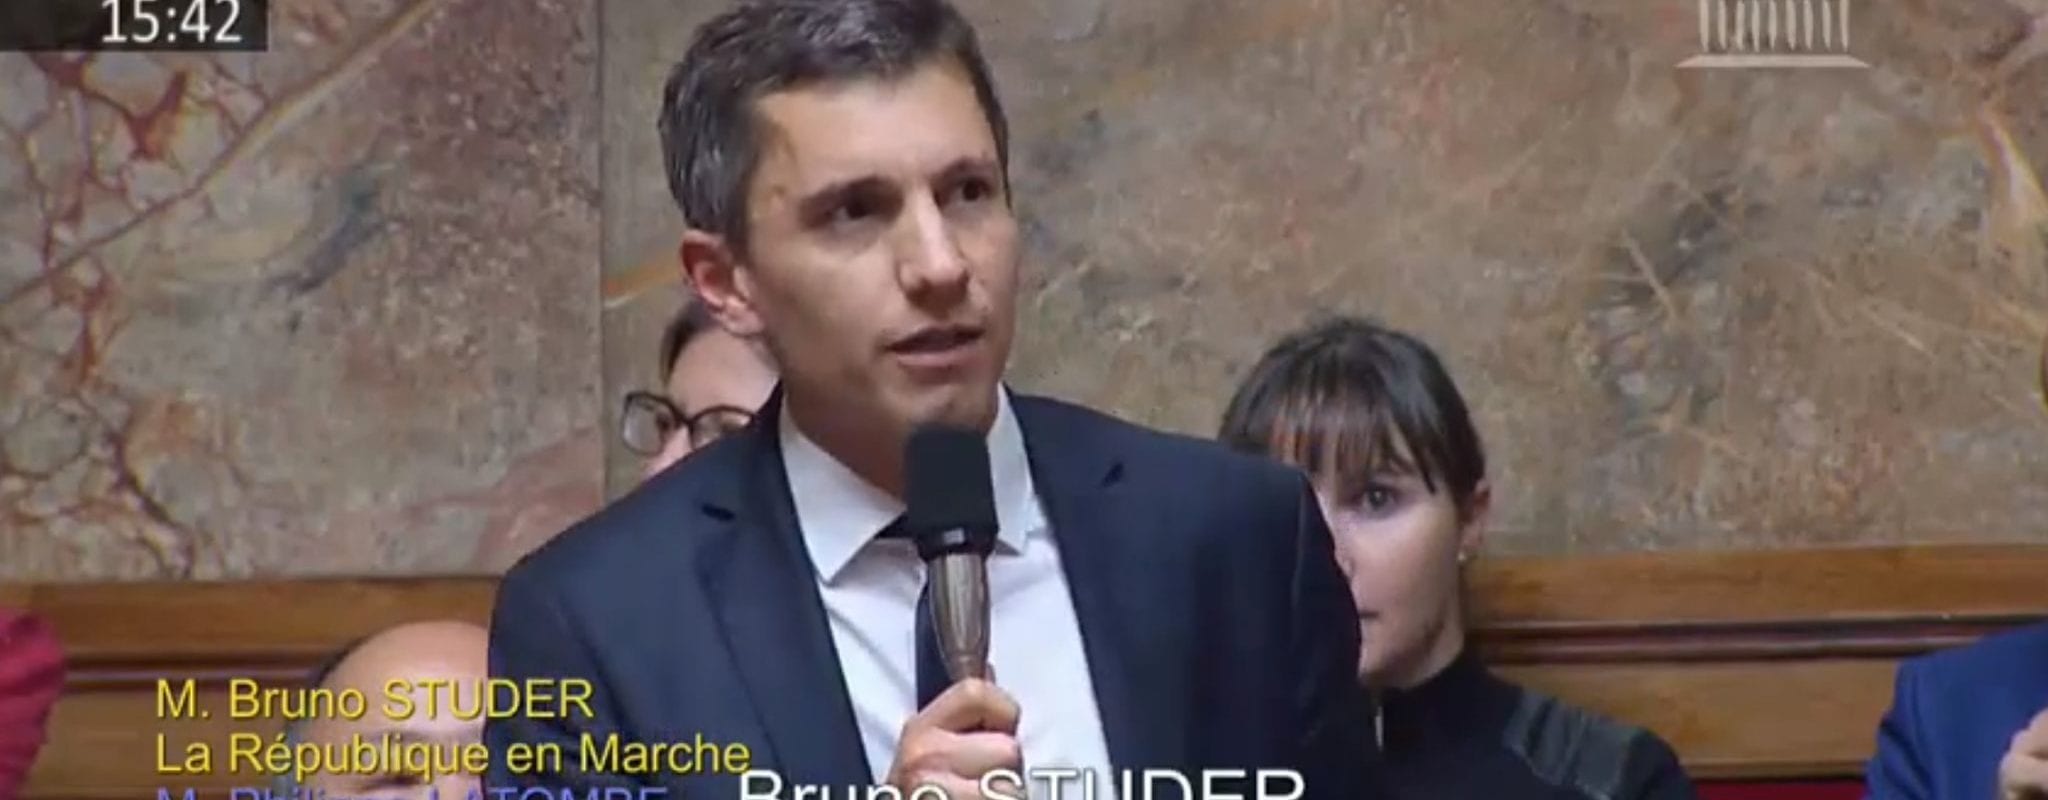 Bruno Studer imite (mal) l’accent alsacien lors des questions au gouvernement